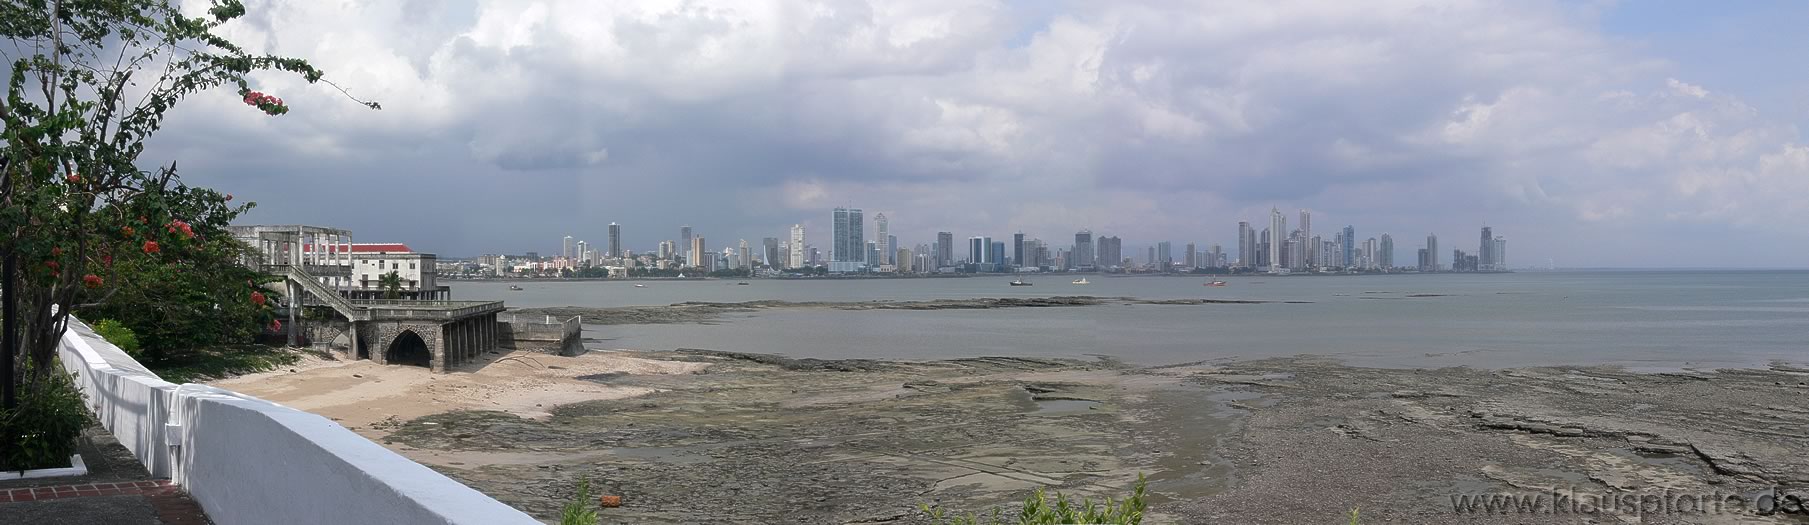 Panama City - Panorama